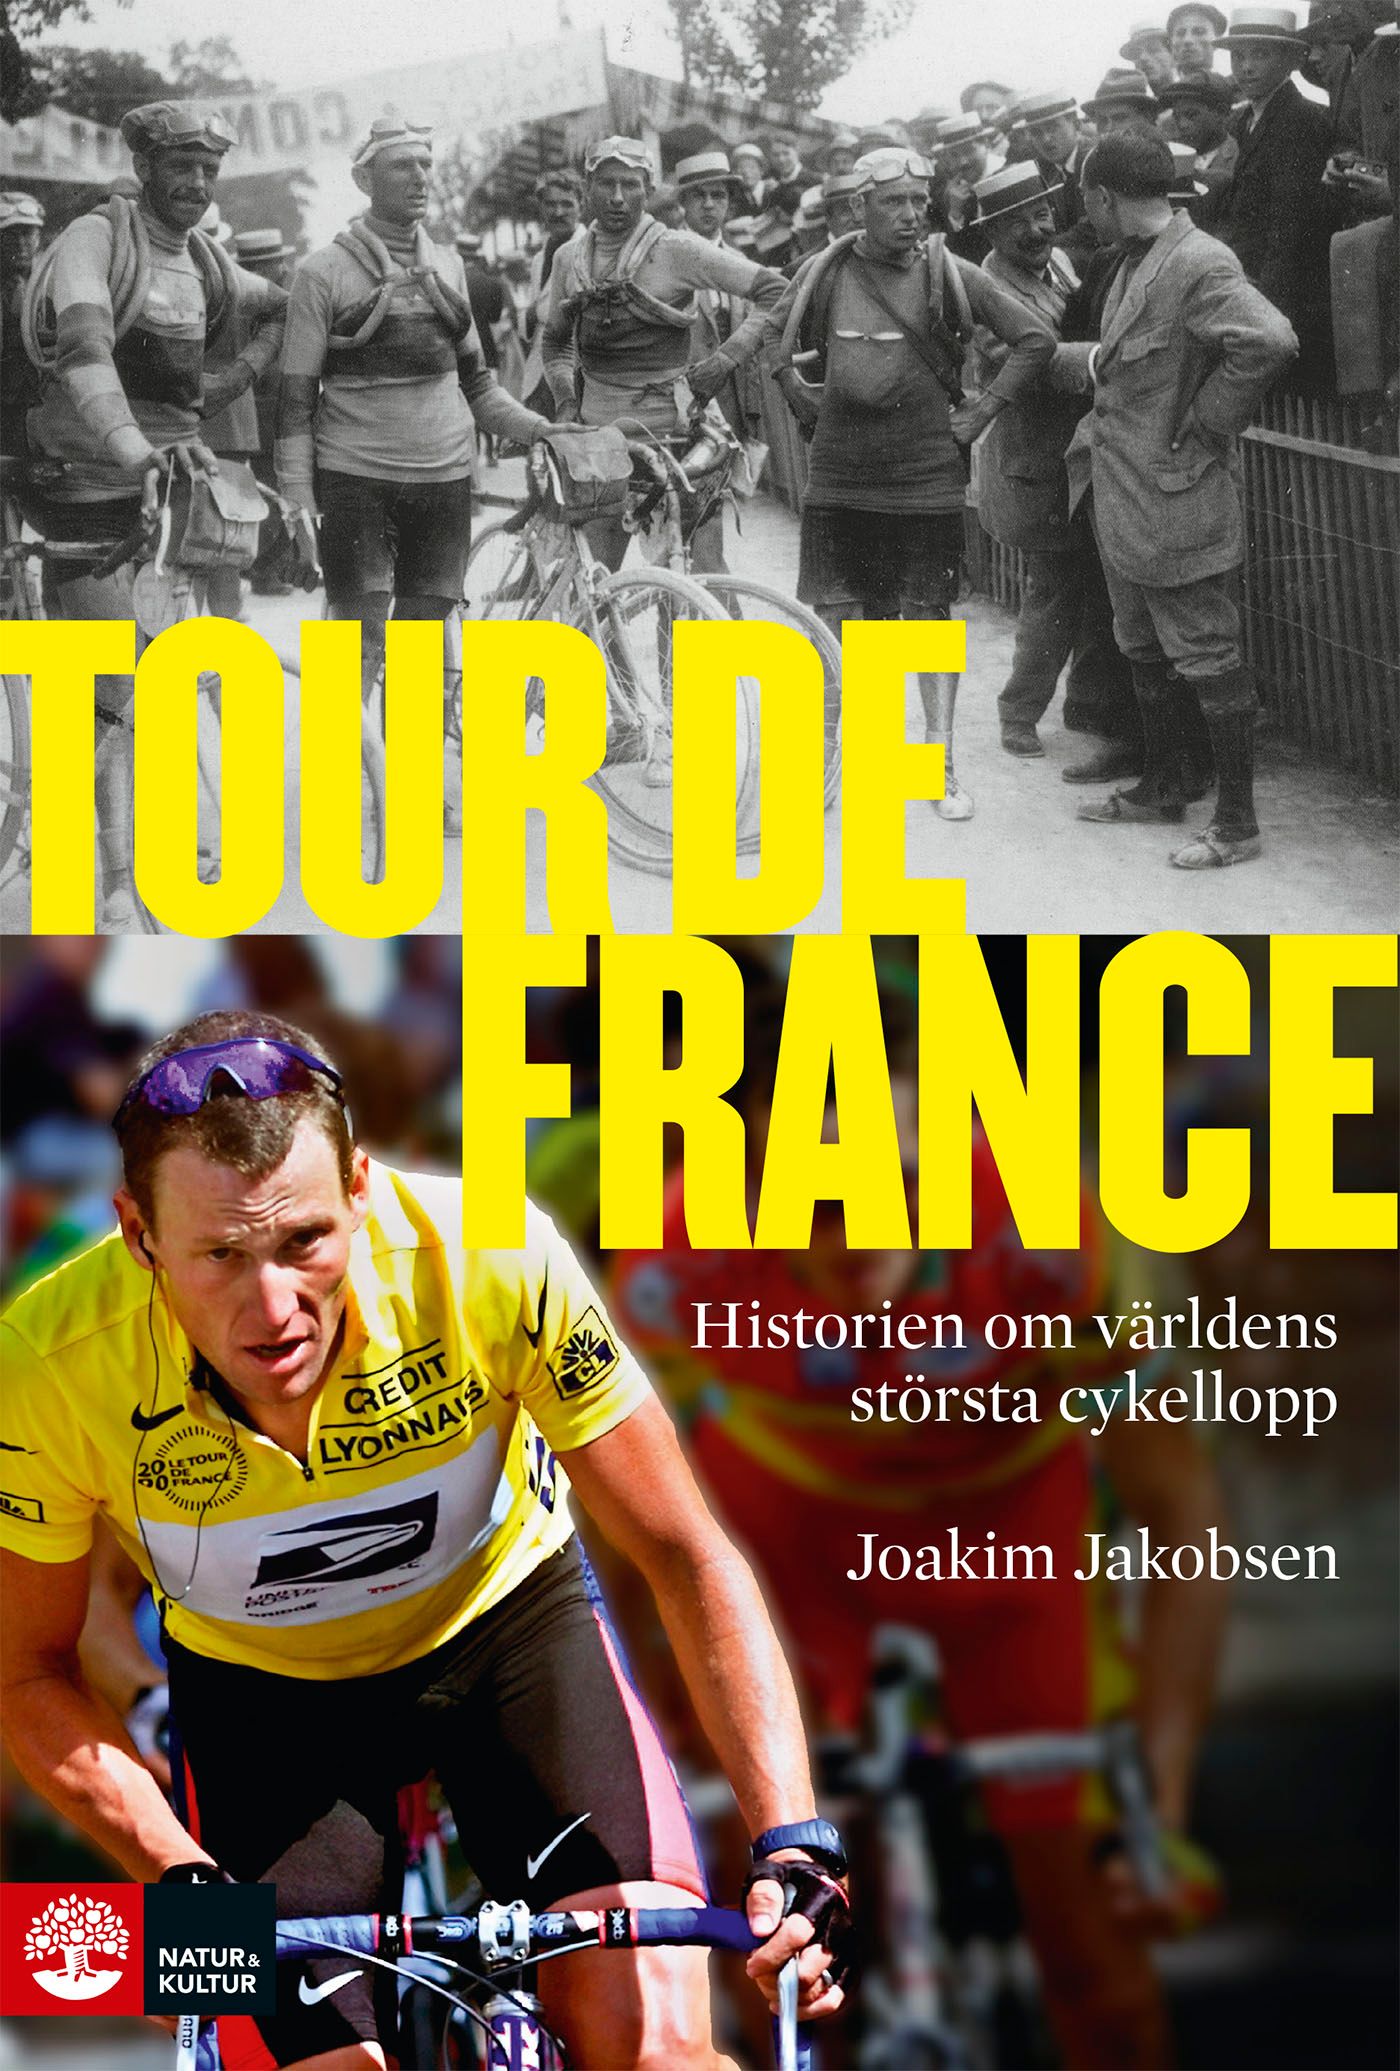 Tour de France: Historien om världens största cykellopp, e-bog af Joakim Jakobsen